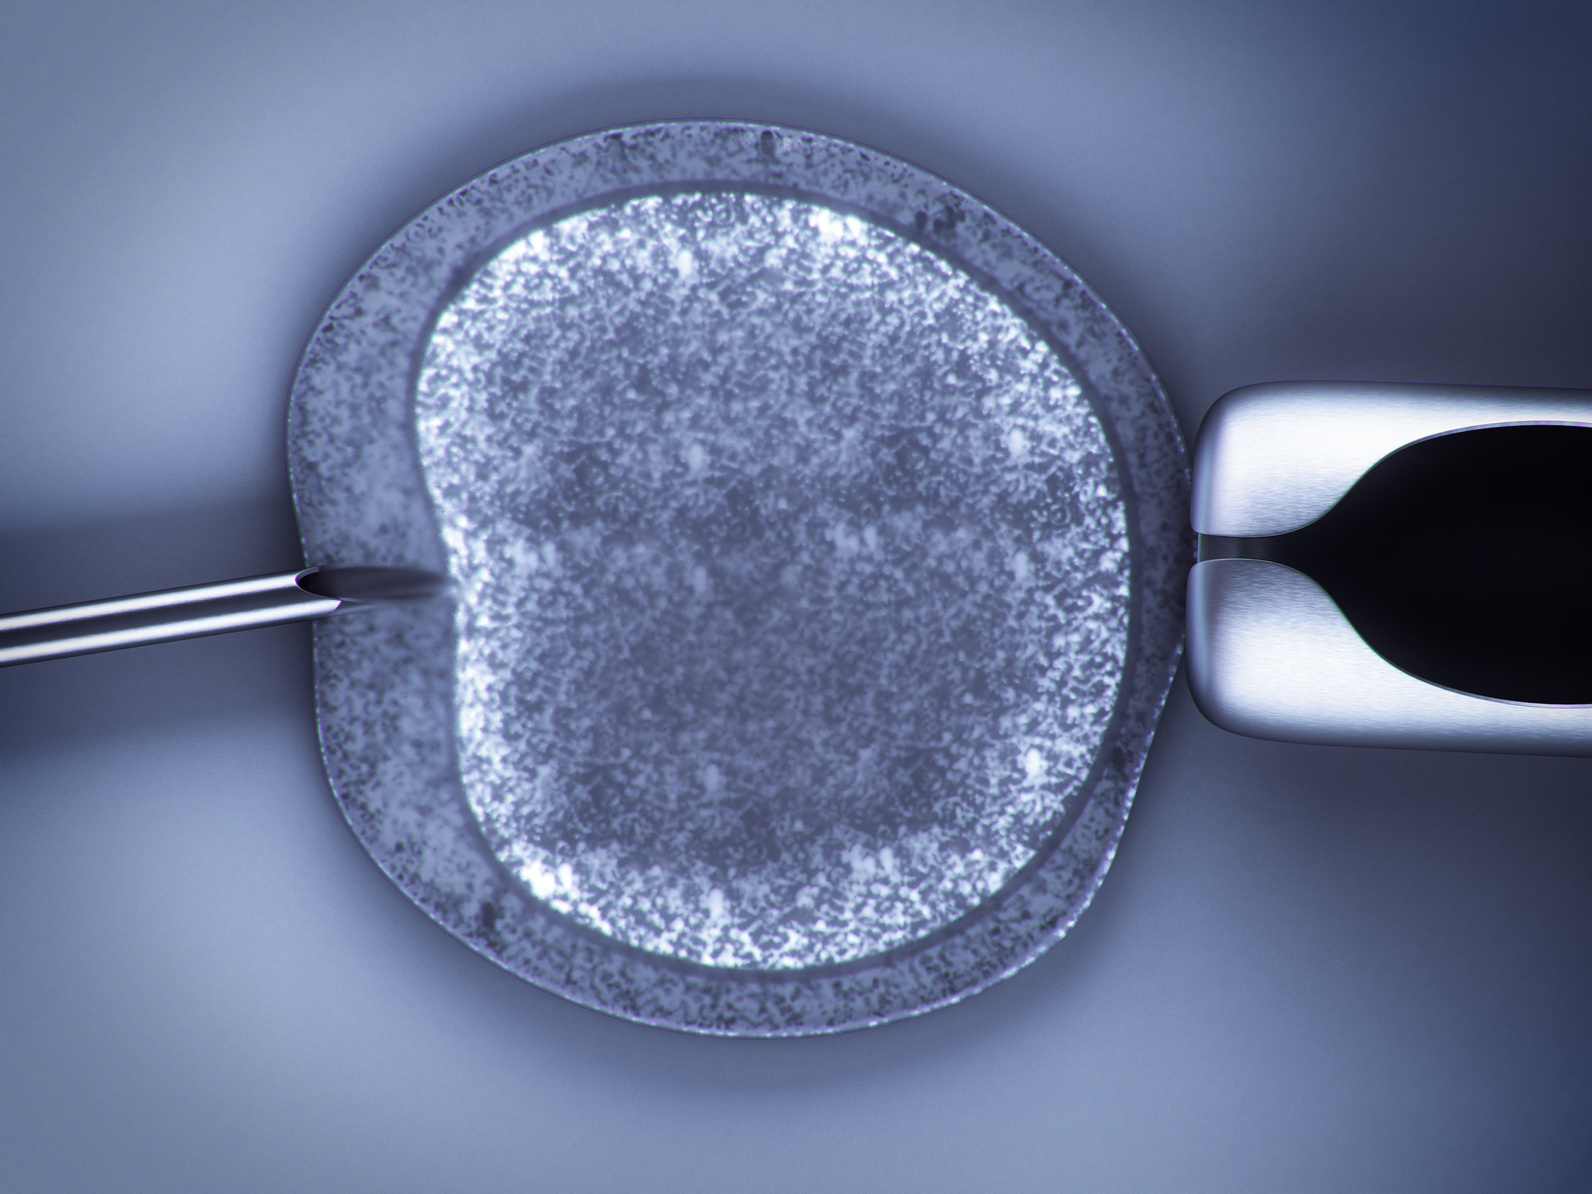 FIV - Fecundación in vitro